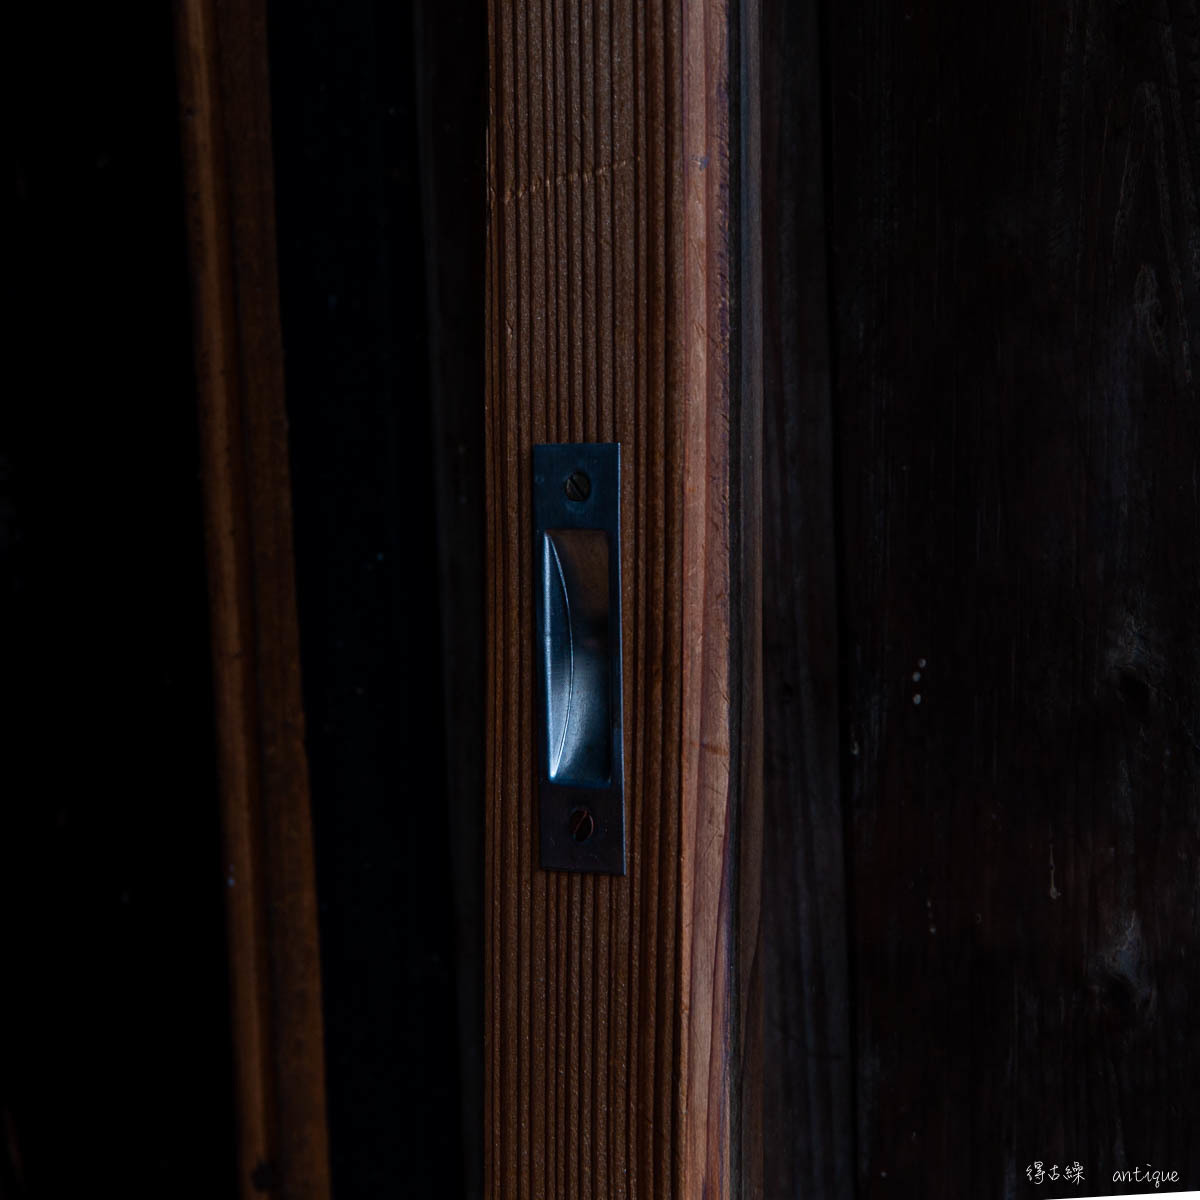 [ старый дом в японском стиле. двери ] кипарисовик туполистный. obi ввод большой окно / высота 1374 ширина 682/ латунь ключ дверь машина есть /.. . кипарис / из дерева окно из дерева двери . дверь раздвижная дверь / античный старый двери выгода старый .